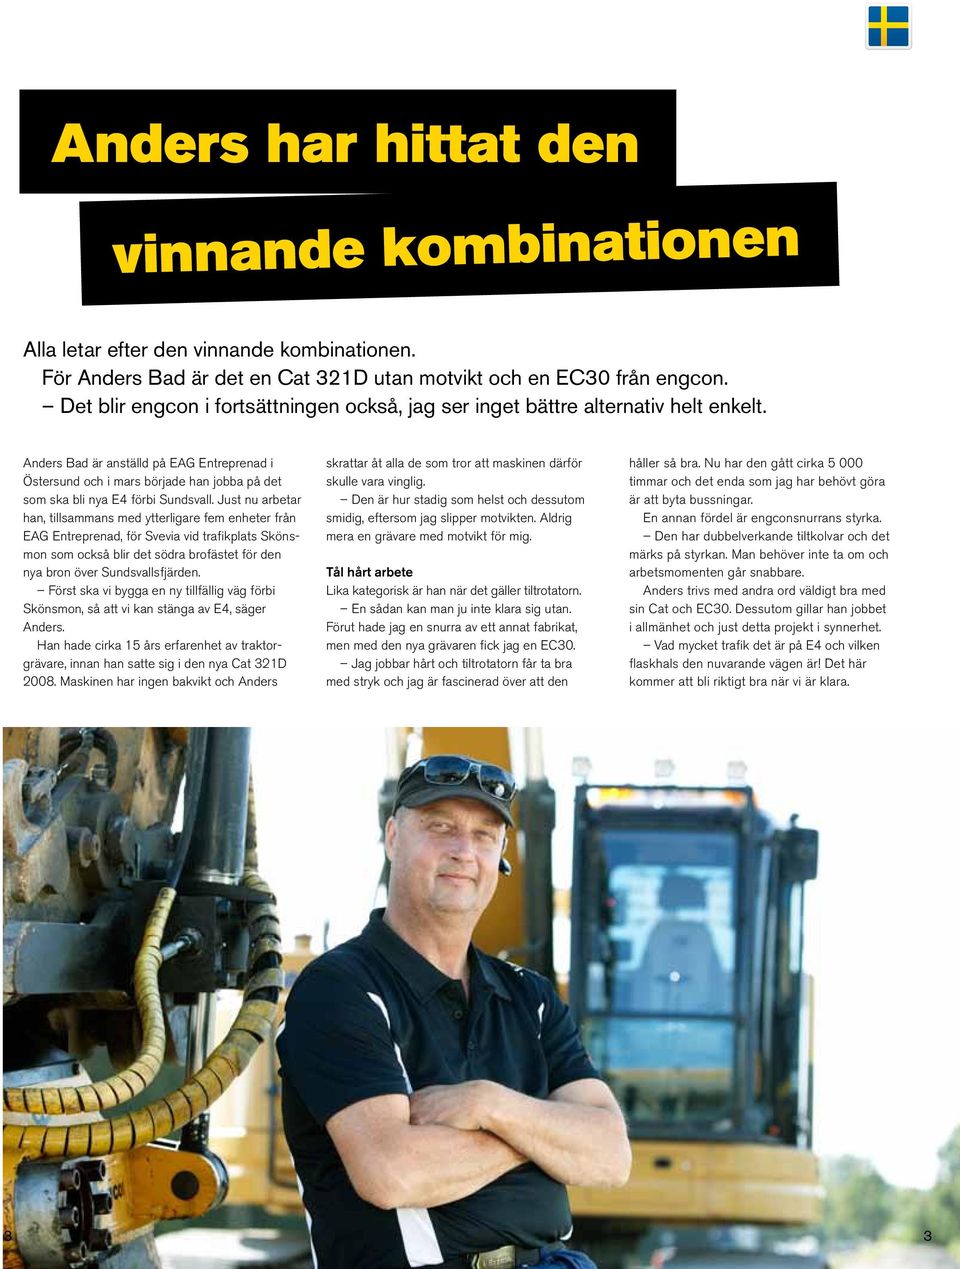 Anders Bad är anställd på EAG Entreprenad i Östersund och i mars började han jobba på det som ska bli nya E4 förbi Sundsvall.